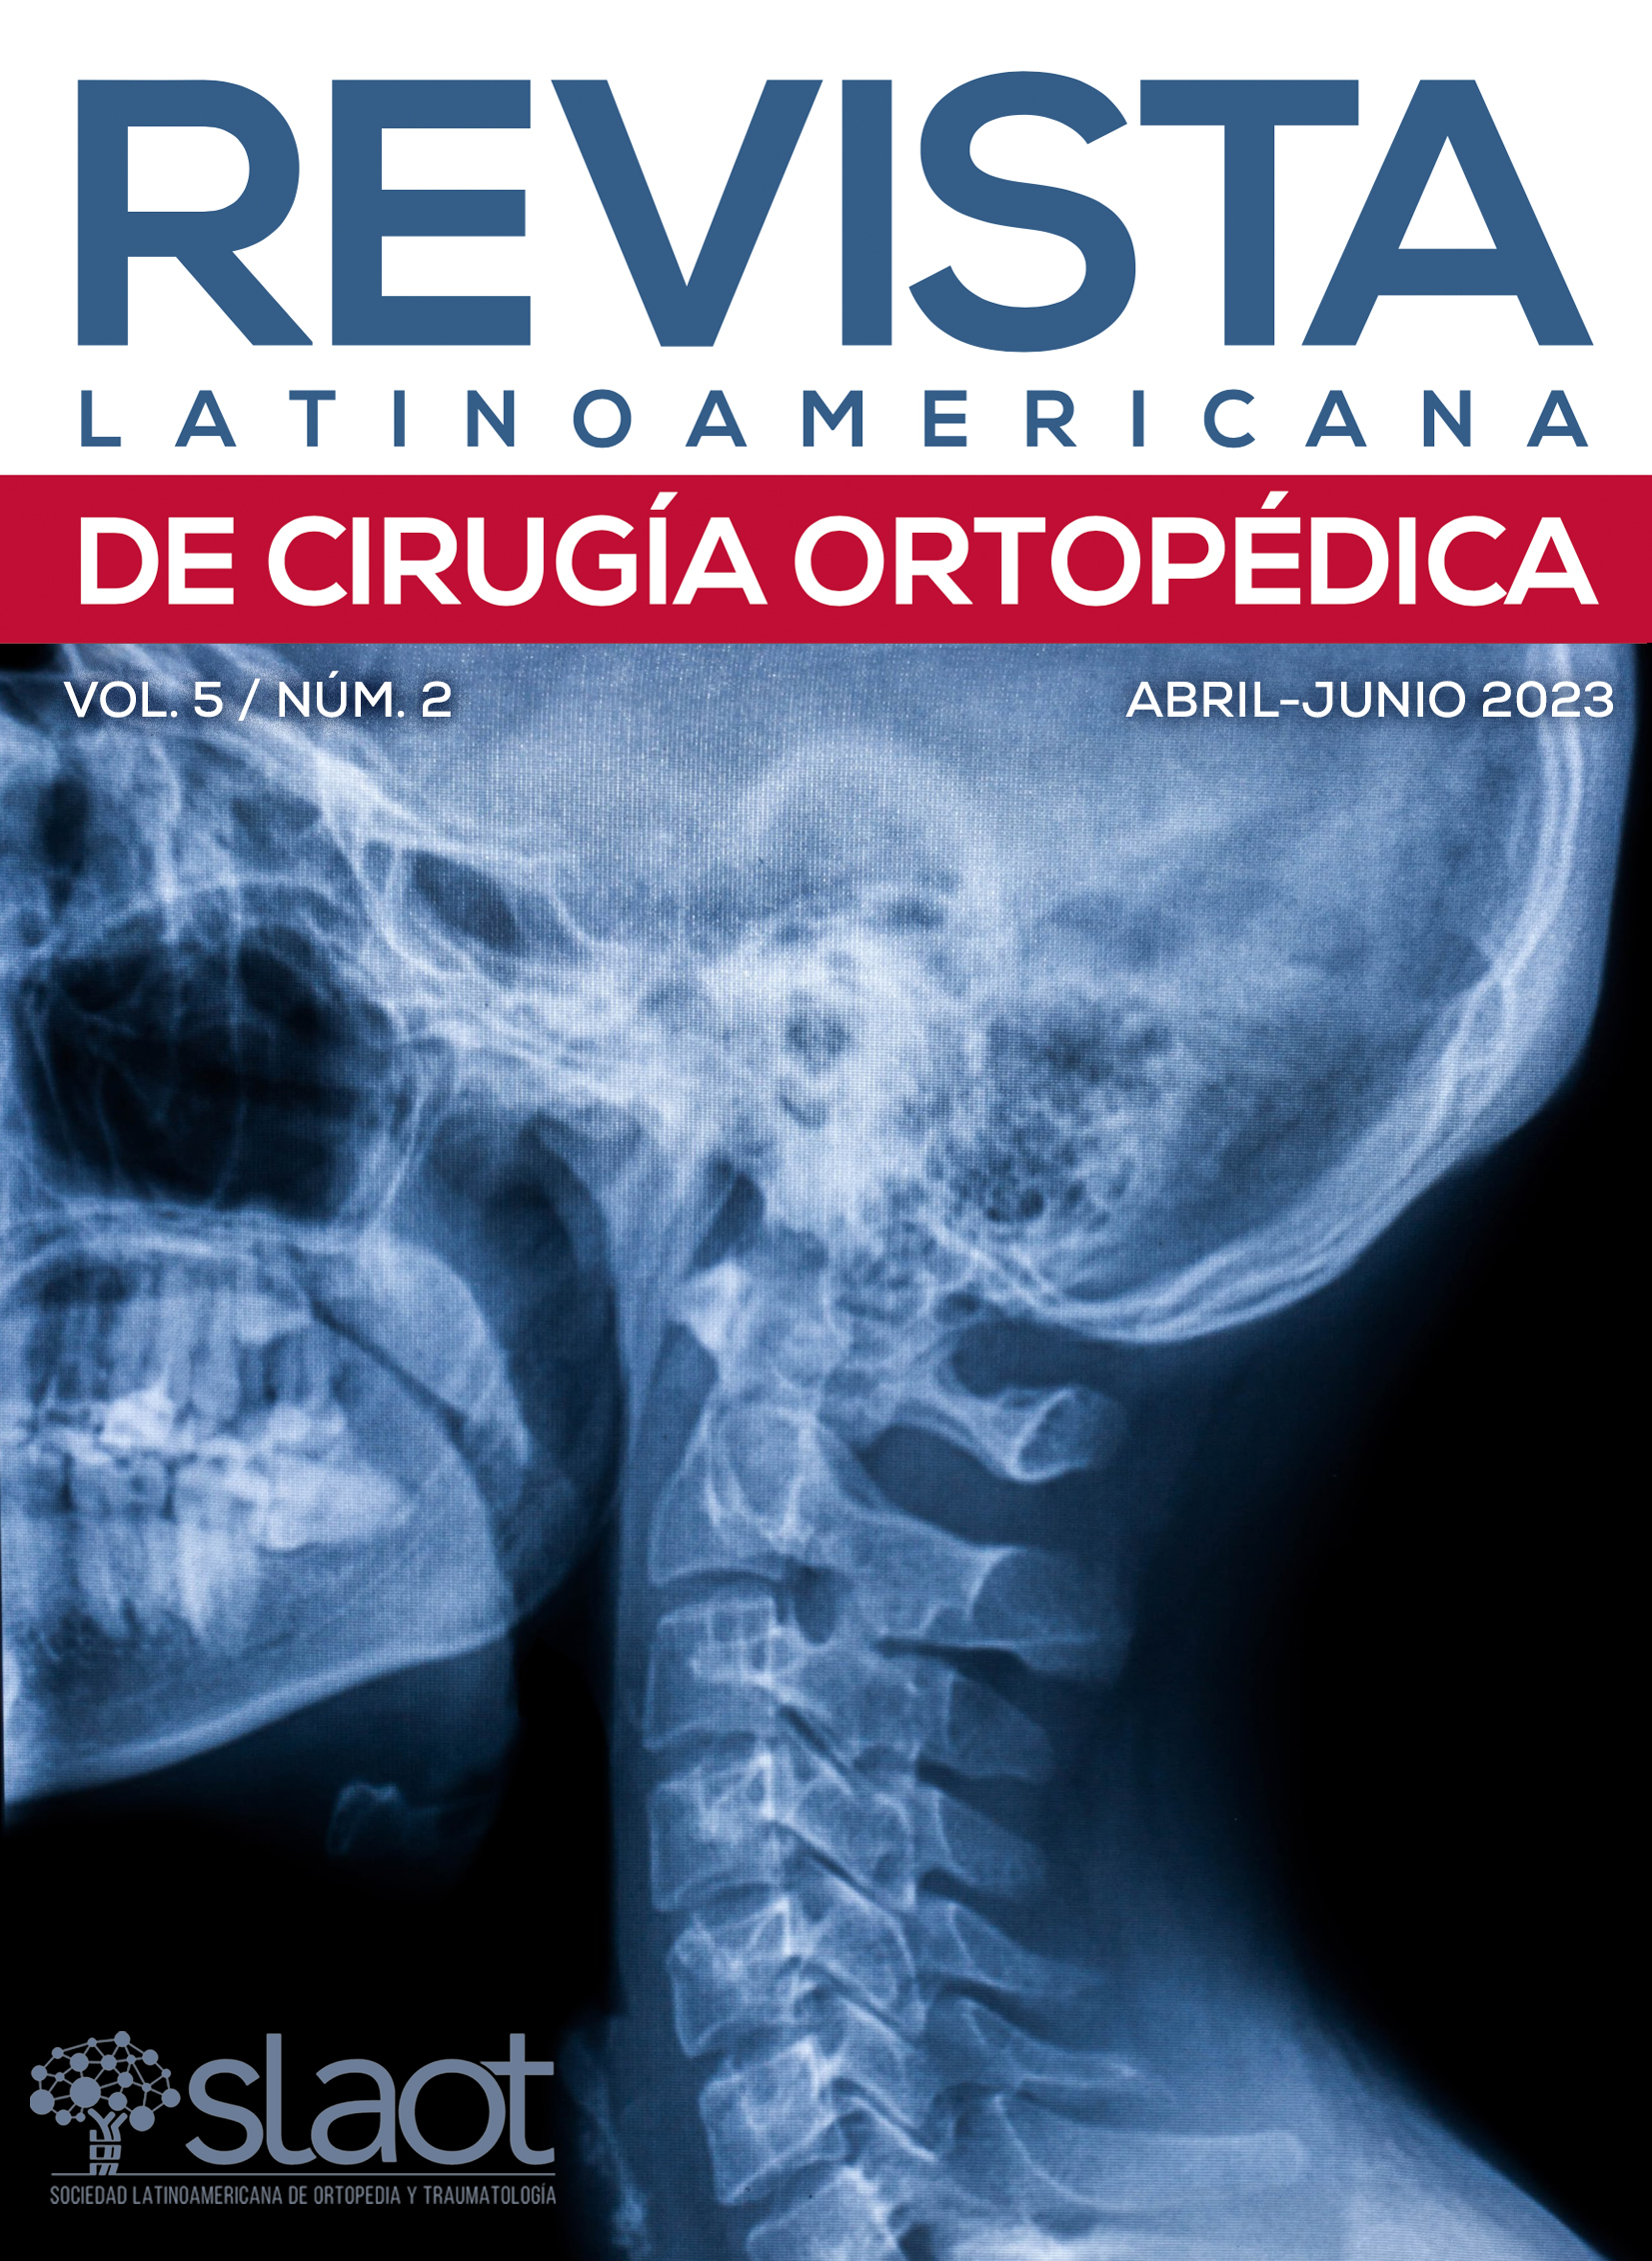 Revista Latinoamericana de Cirugía Ortopédica